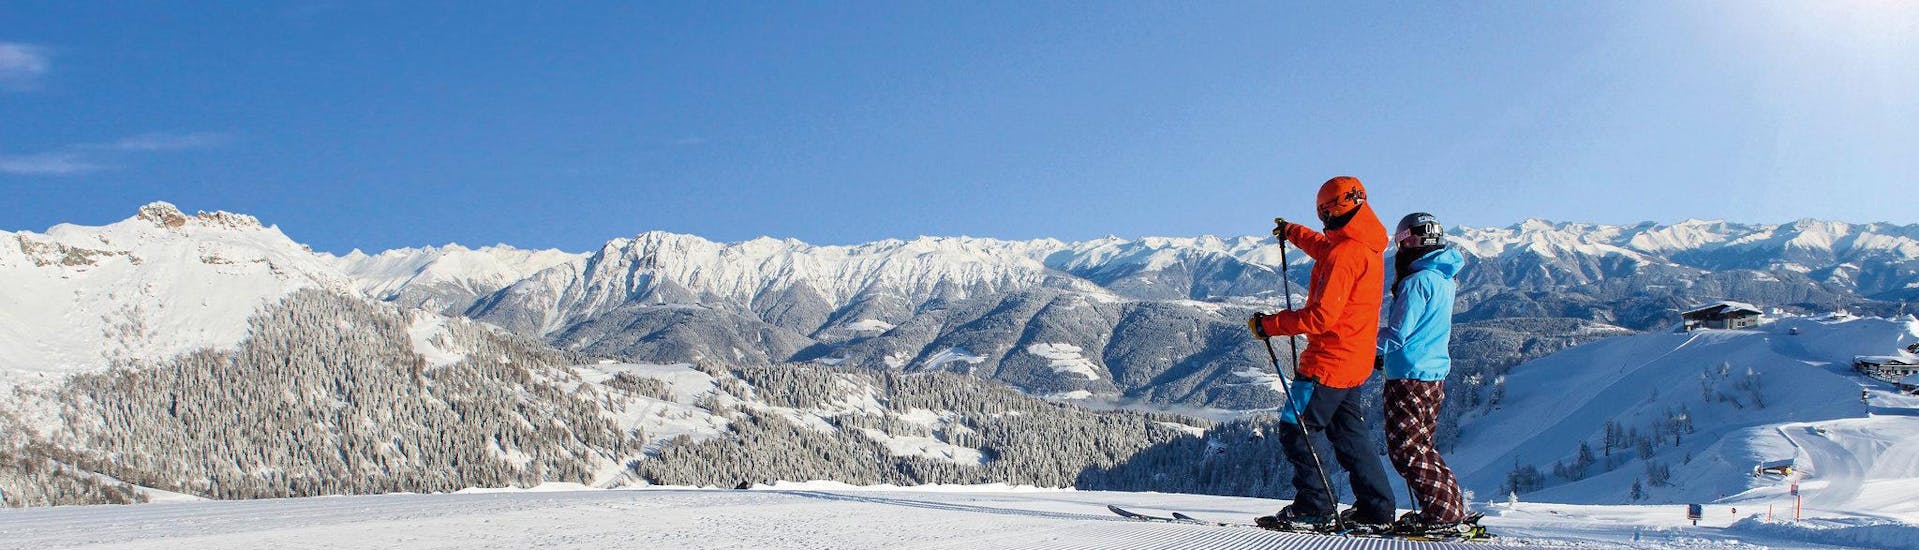 Ausblick auf die sonnige Berglandschaft beim Skifahren lernen mit den Skischulen am Nassfeld.